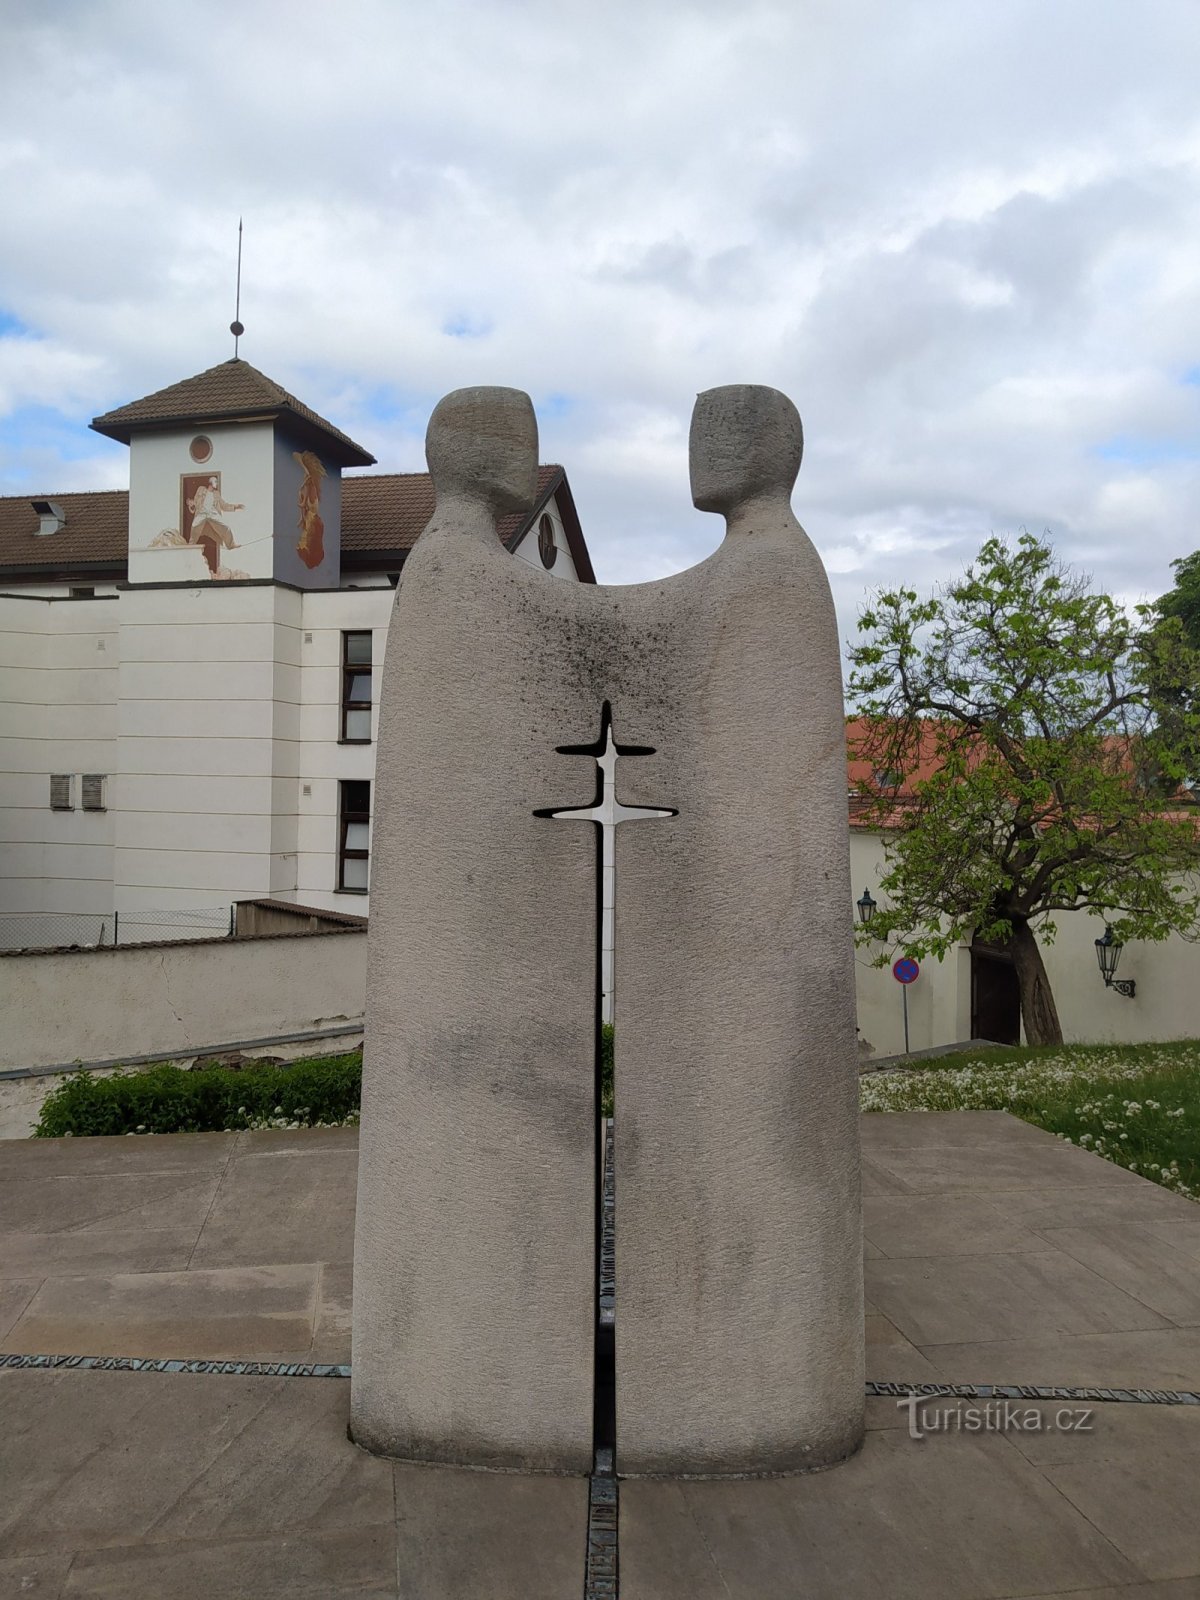 Brno, Petrov, Sousoší st. Cyril och Methodius